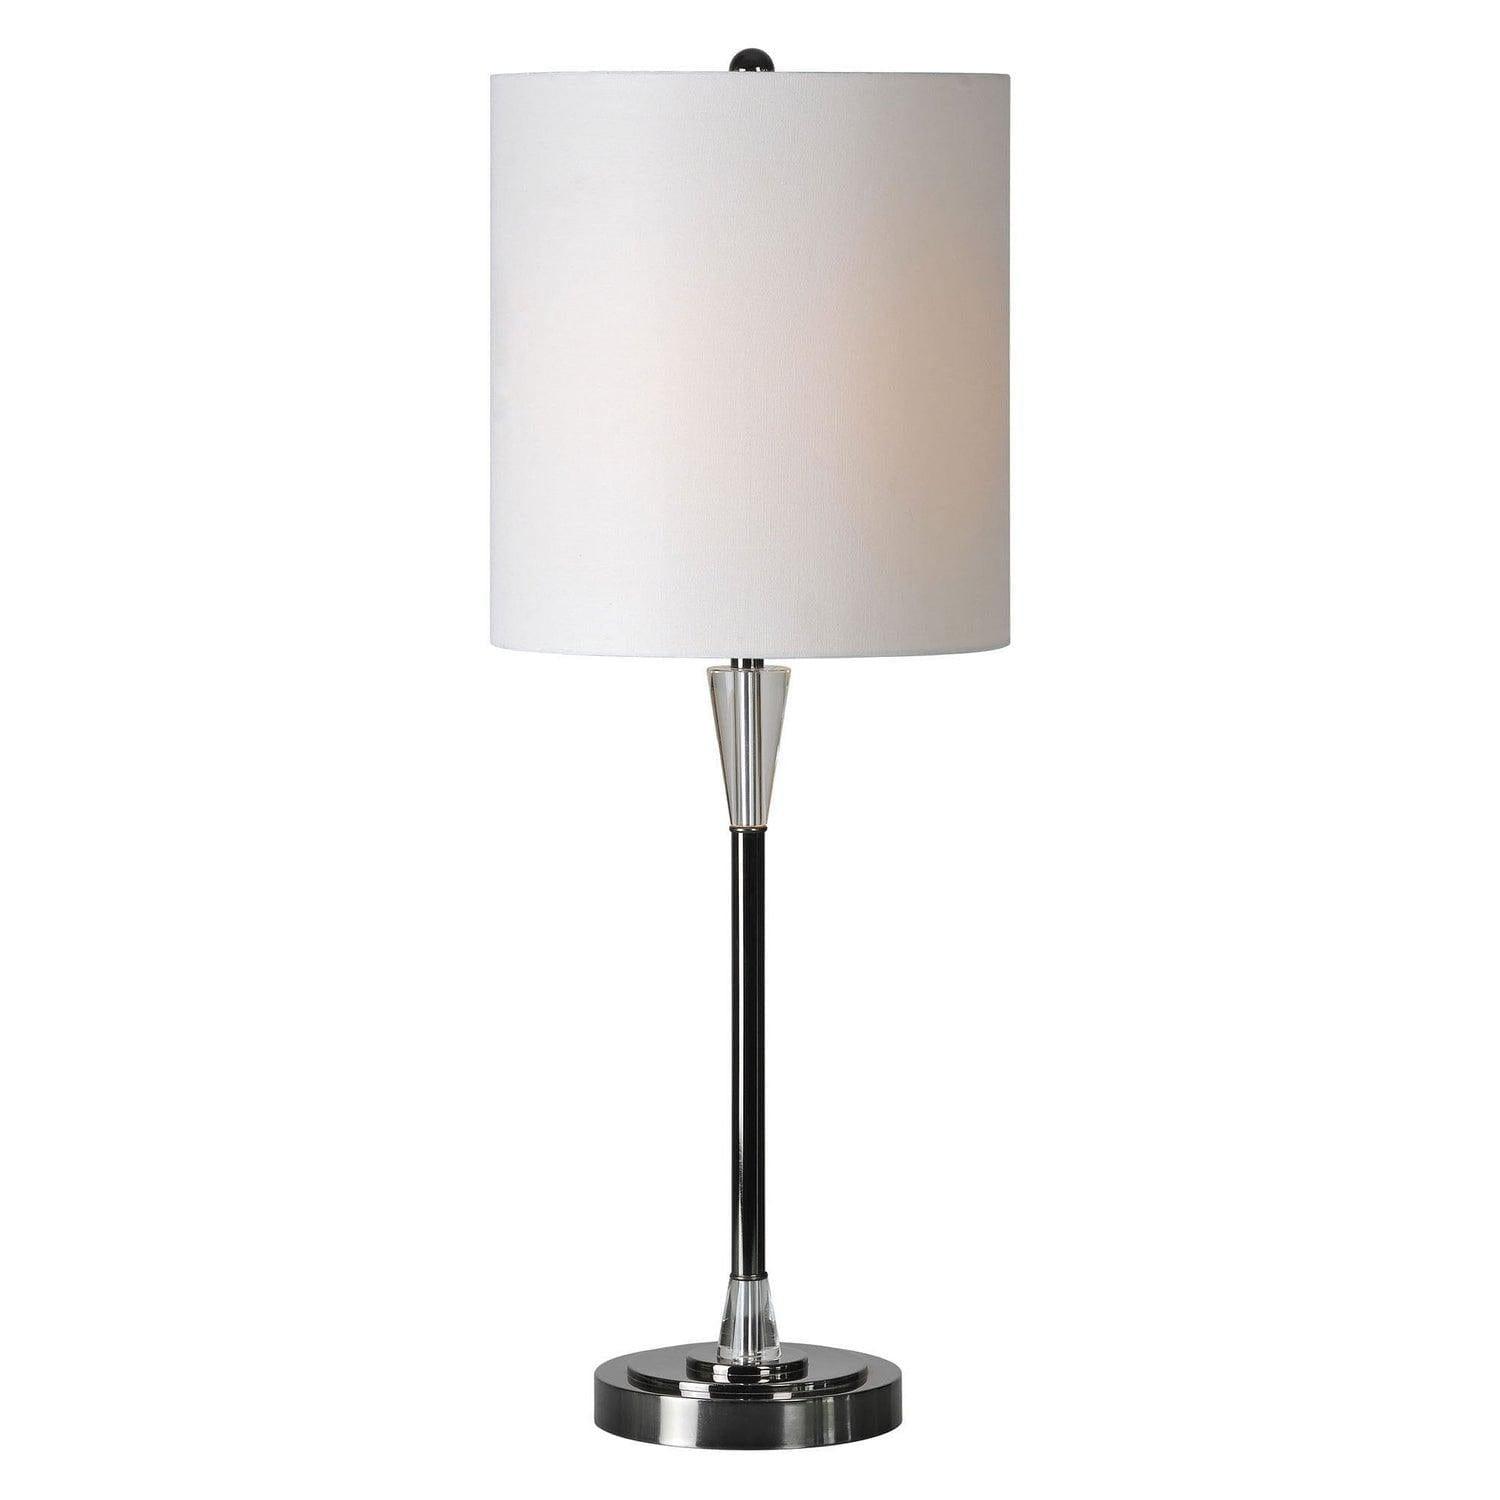 Renwil - Arkitekt Table Lamp - LPT499 | Montreal Lighting & Hardware